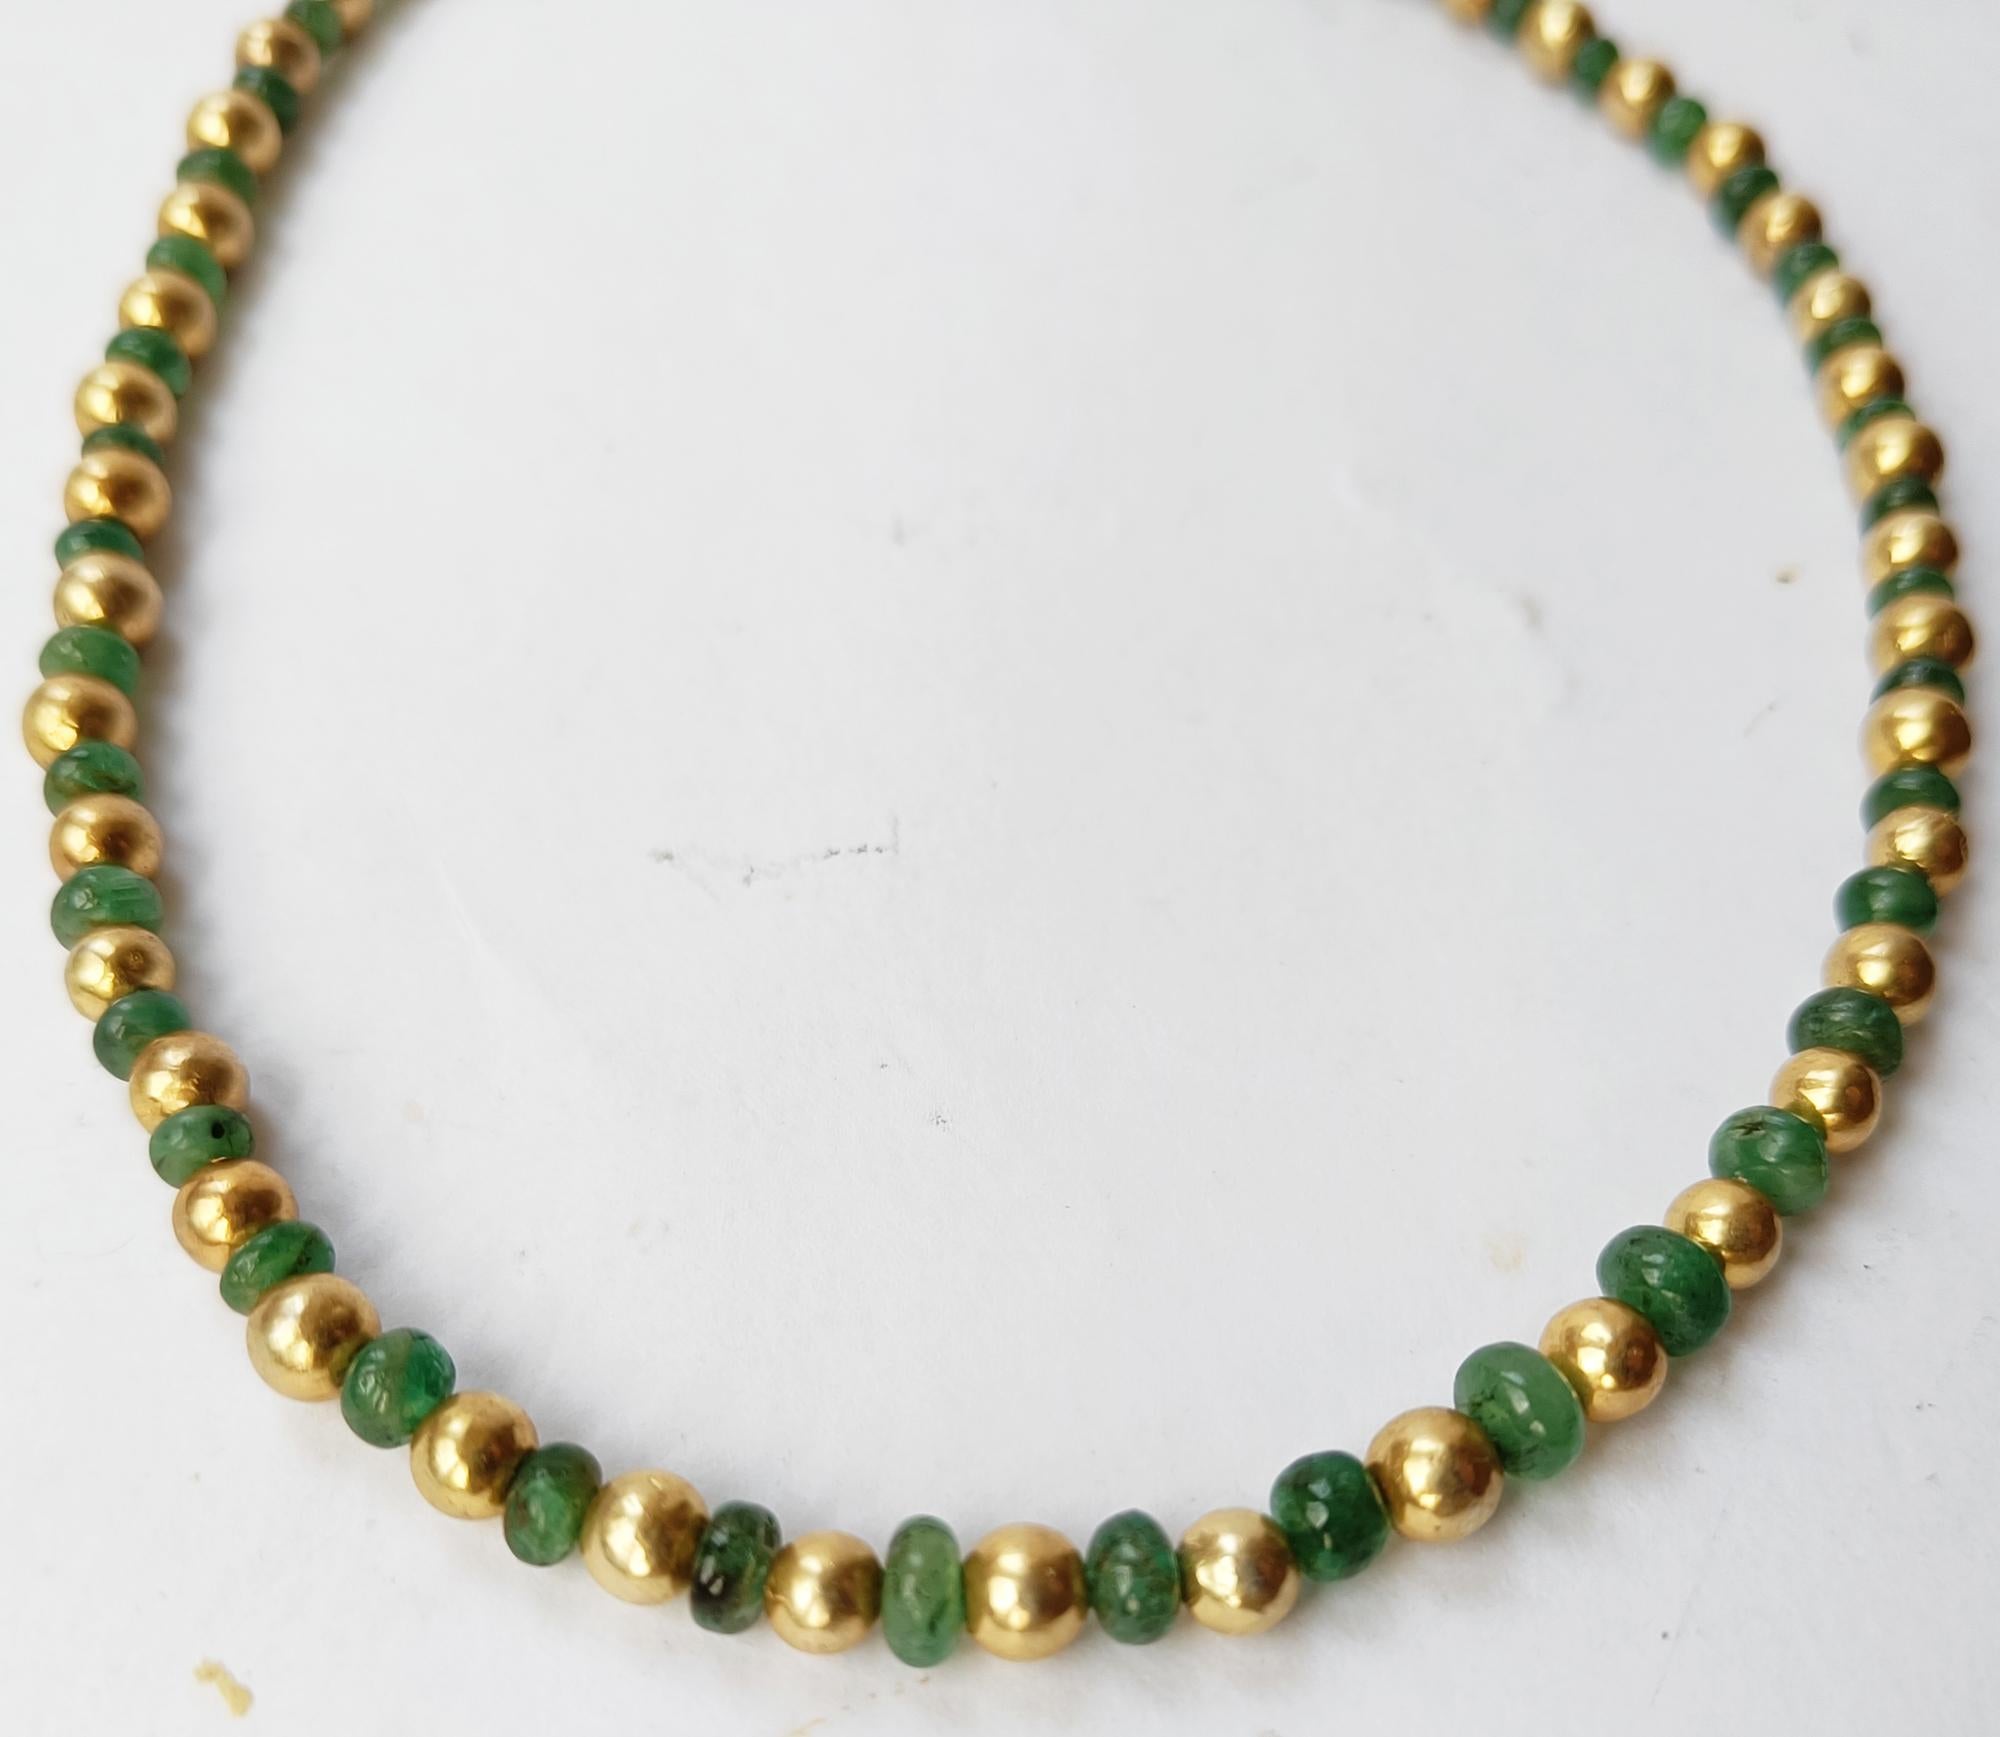 Wunderschöne Perlenkette aus Smaragd und vergoldetem Silber
Unfacettierte sambische Smaragdperlen mit vergoldeten Silberperlen  
4-5 mm Smaragd-Perlen
5 mm vergoldete Silberperlen 
Halskette 16 Zoll 40 cm 
Alle handgefertigt mit